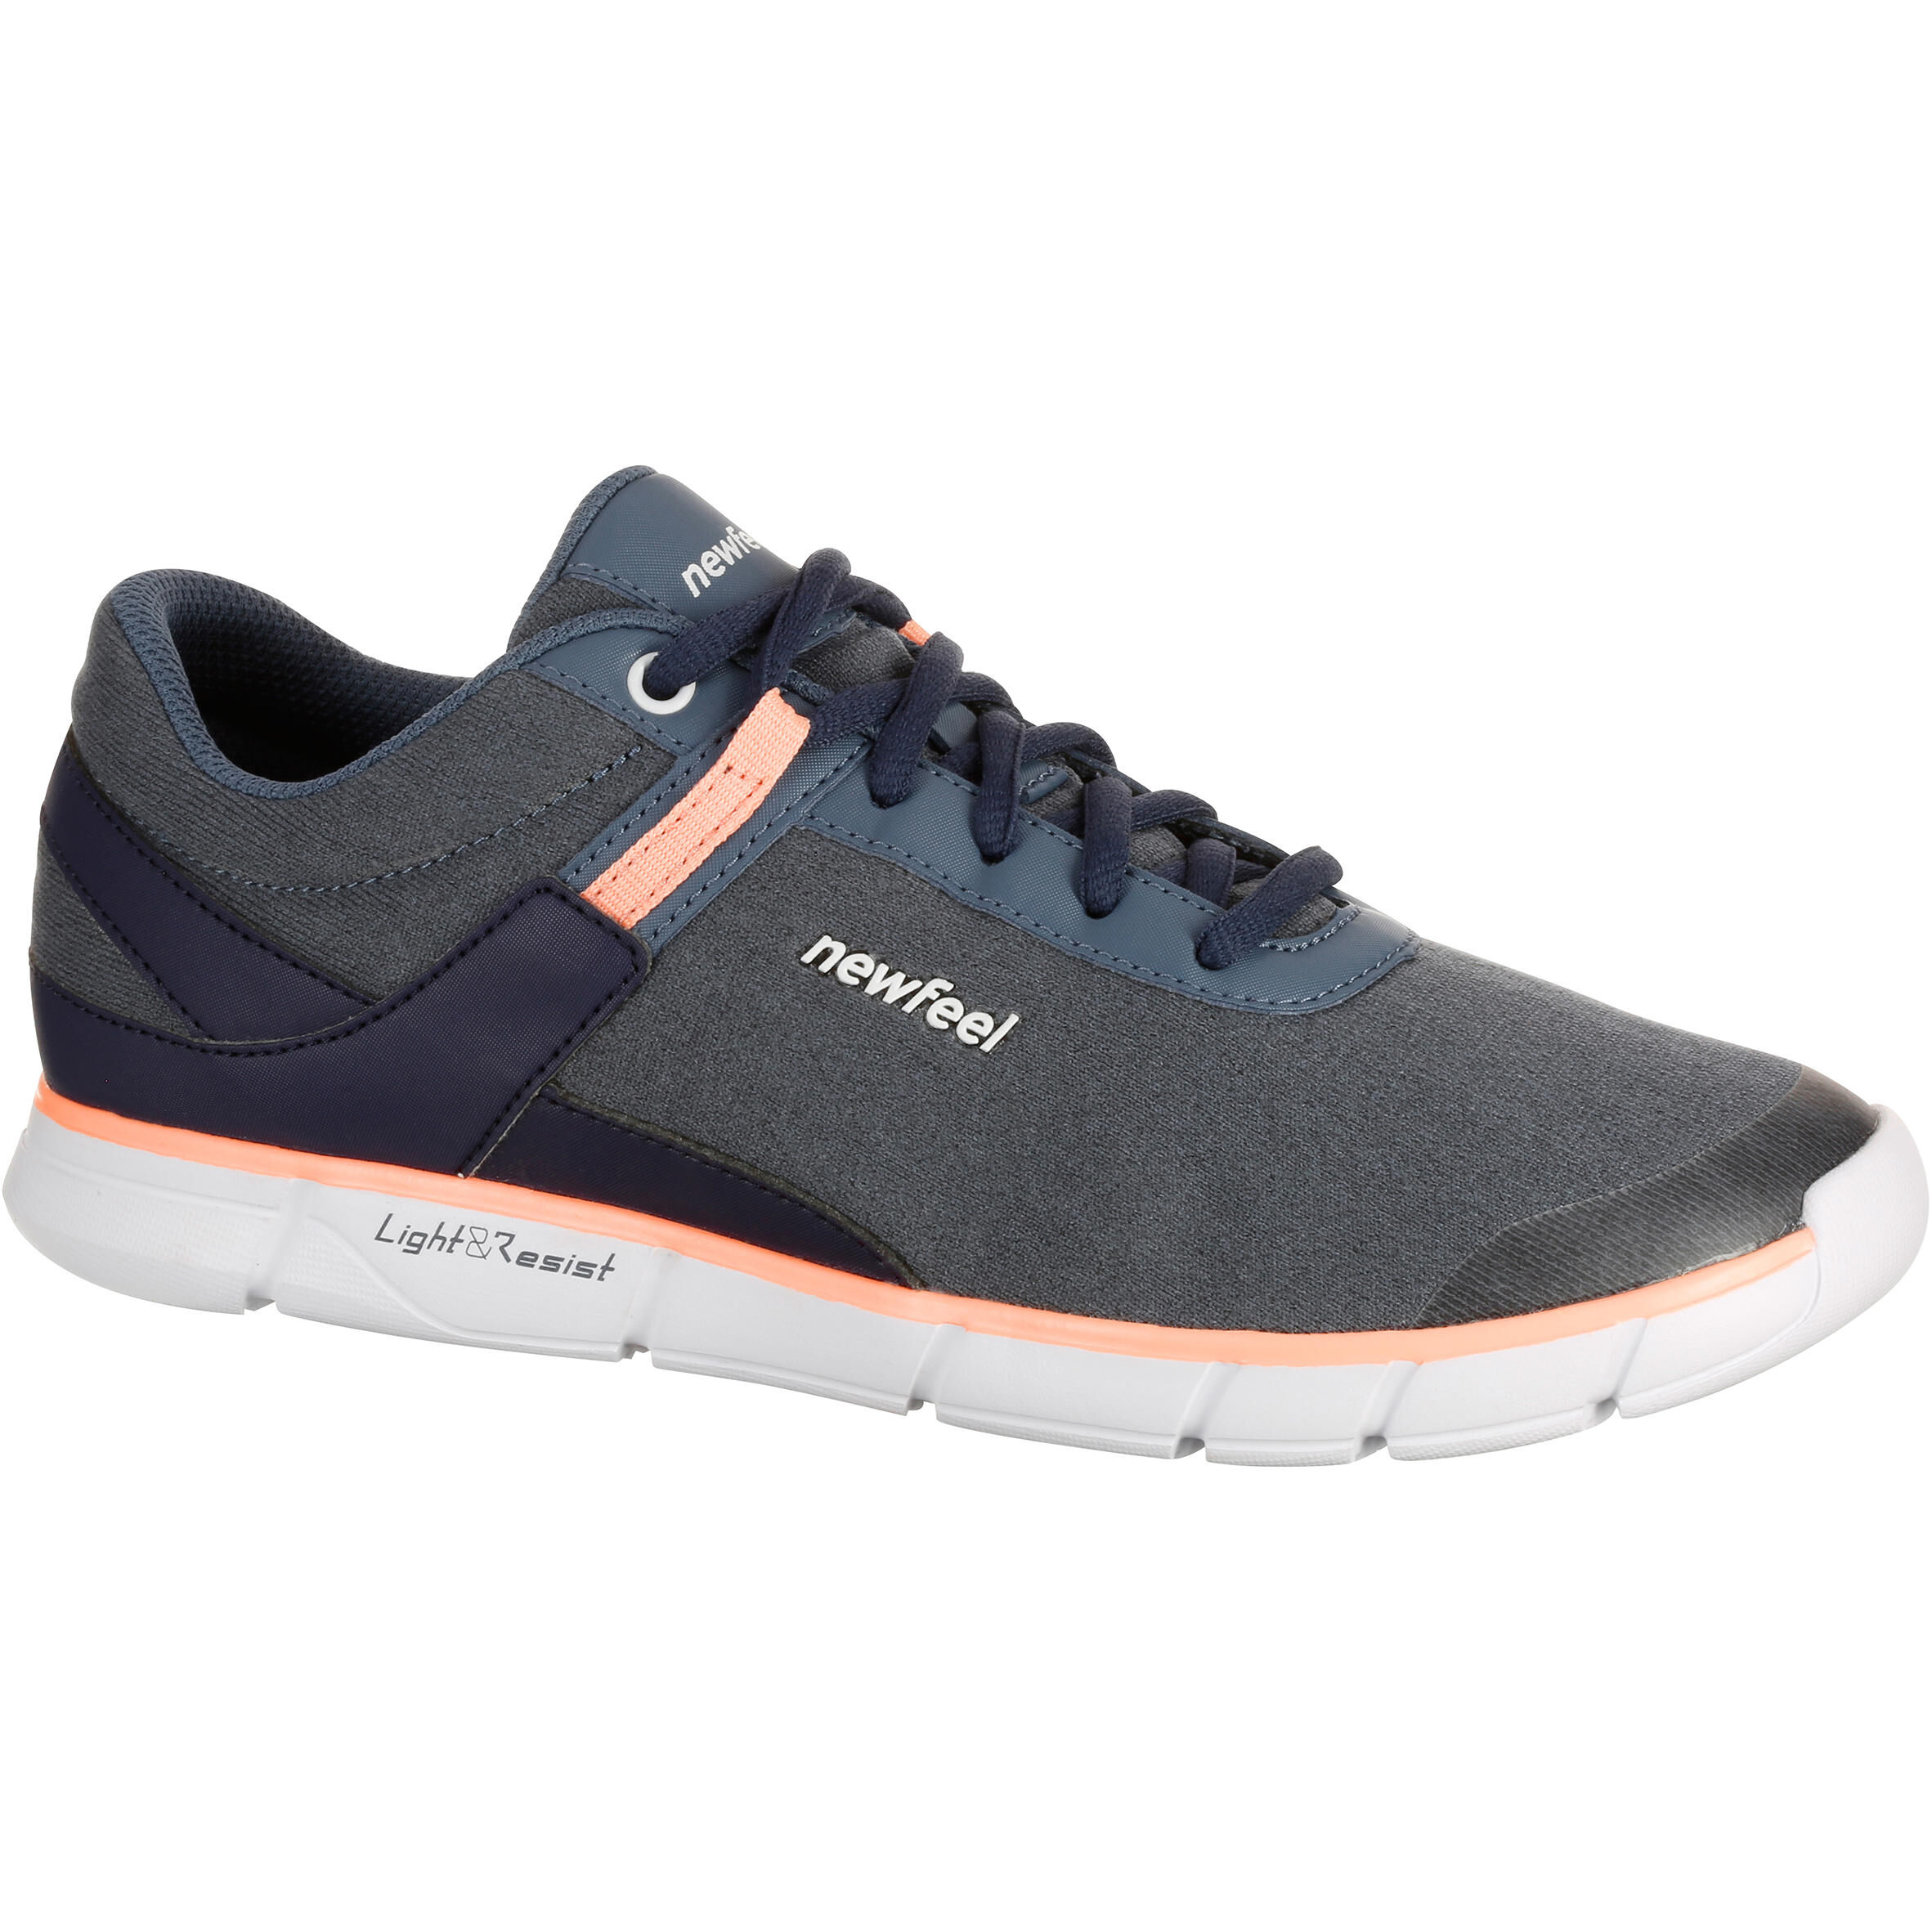 NEWFEEL Soft 540 Women's Fitness Walking Shoes - tiki blue